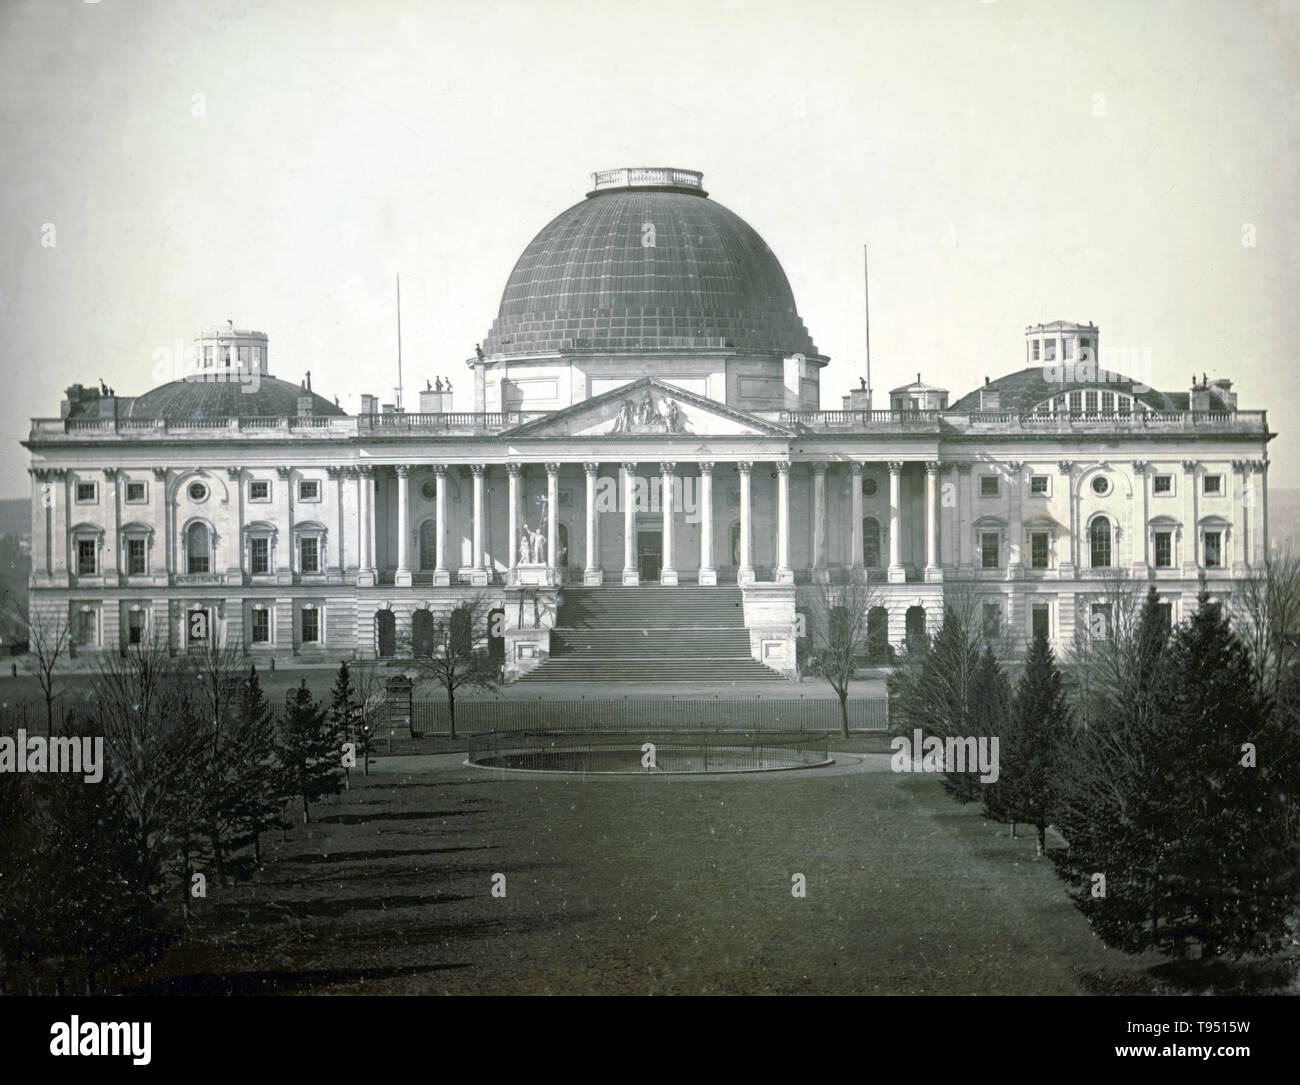 United States Capitol, Washington, D.C., 1846. East front elevation. Daguerreotype by John Plumbe (1809-1857). Stock Photo